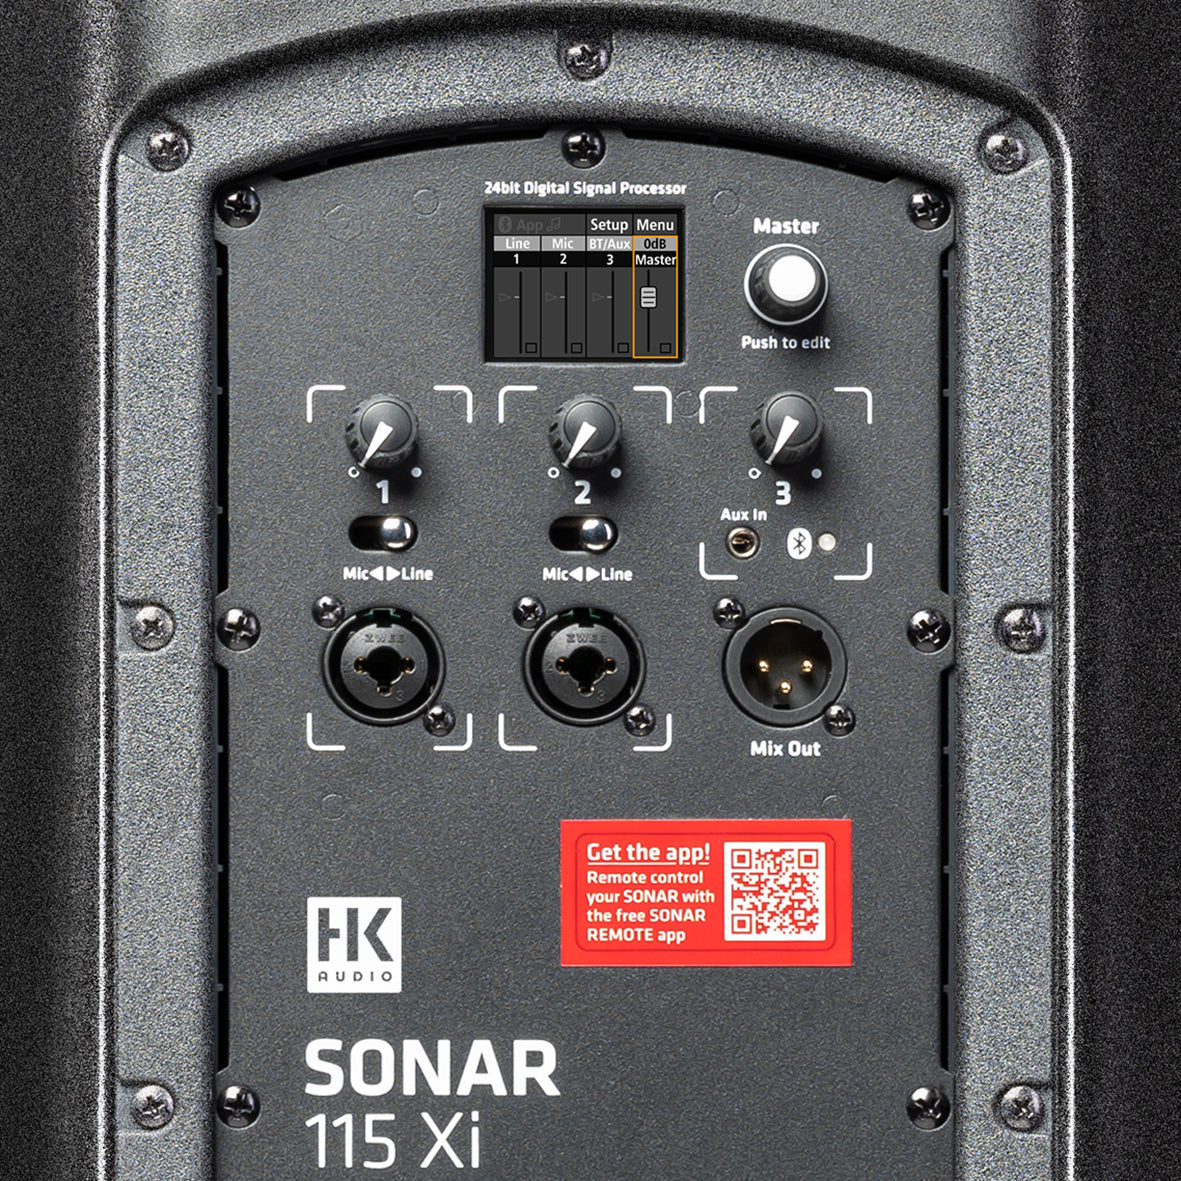 HK Audio SONAR 115 XI Loudspeaker with Bluetooth - Each - Black